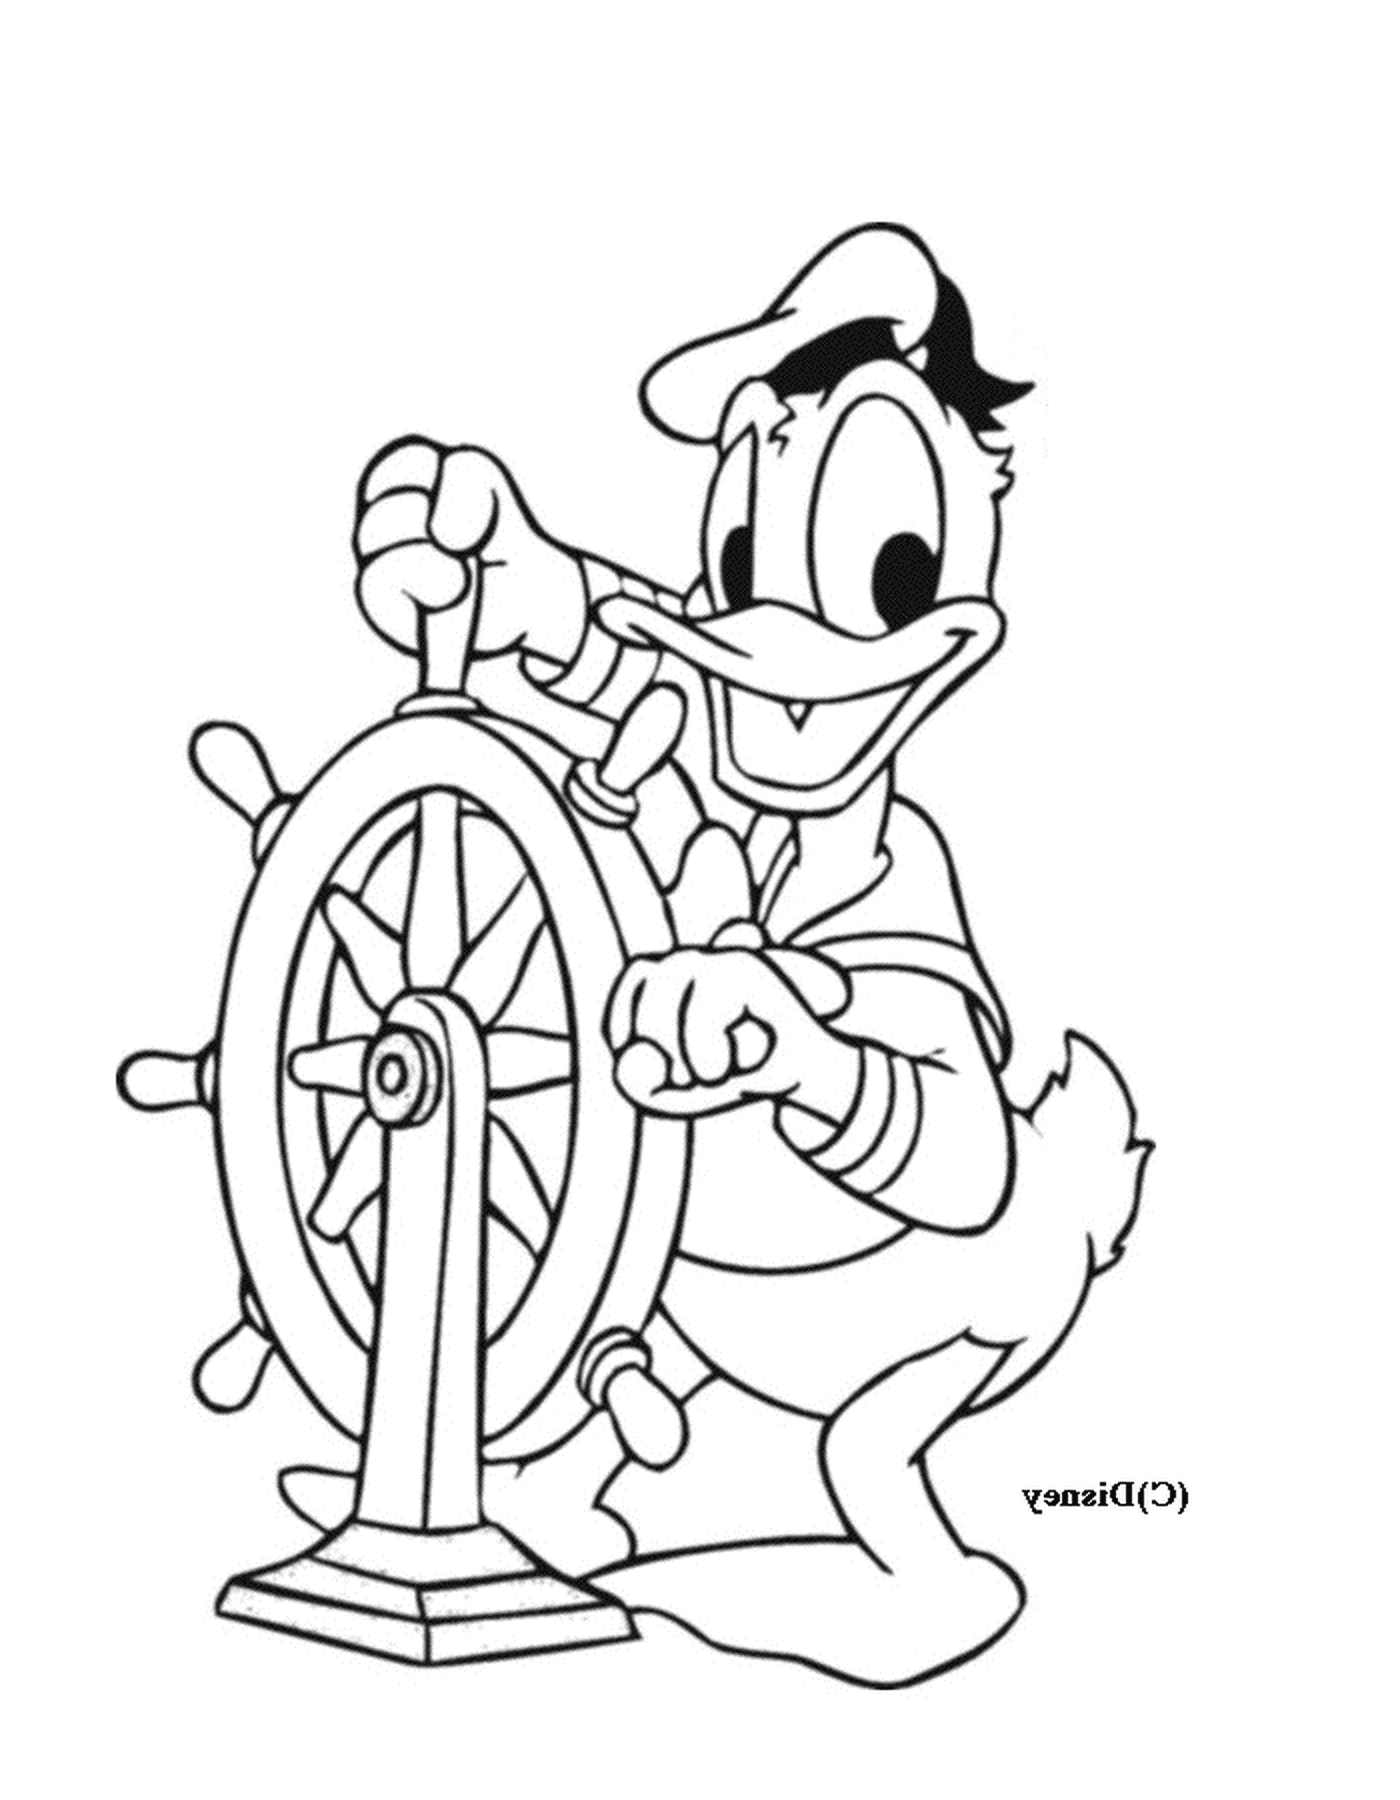  Donald naviga con fiducia 